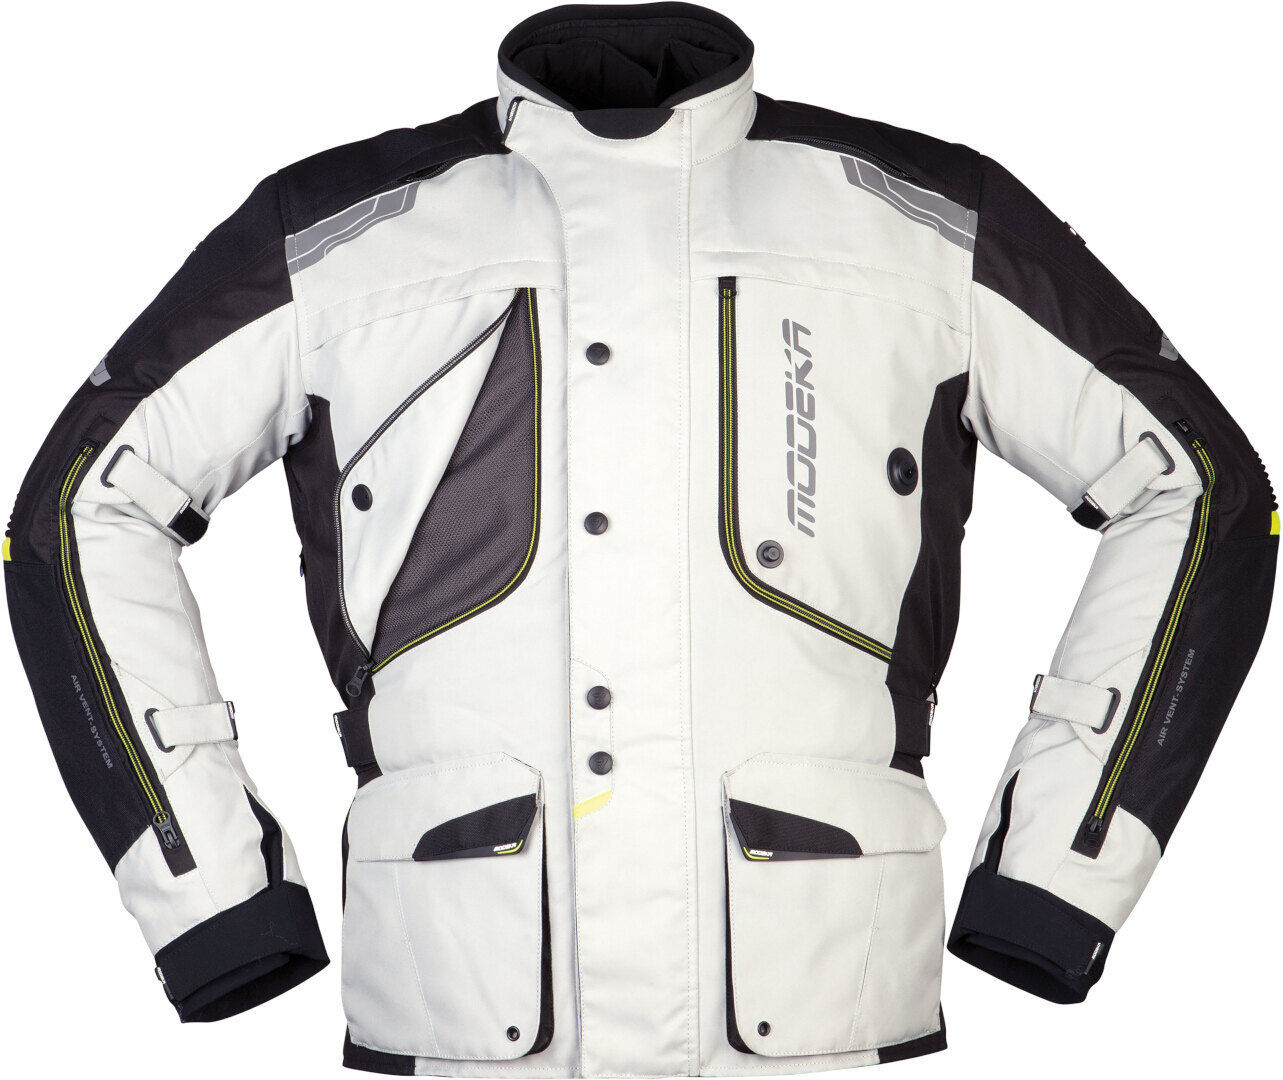 Modeka Aeris Motorsykkel tekstil jakke 3XL Svart Grå